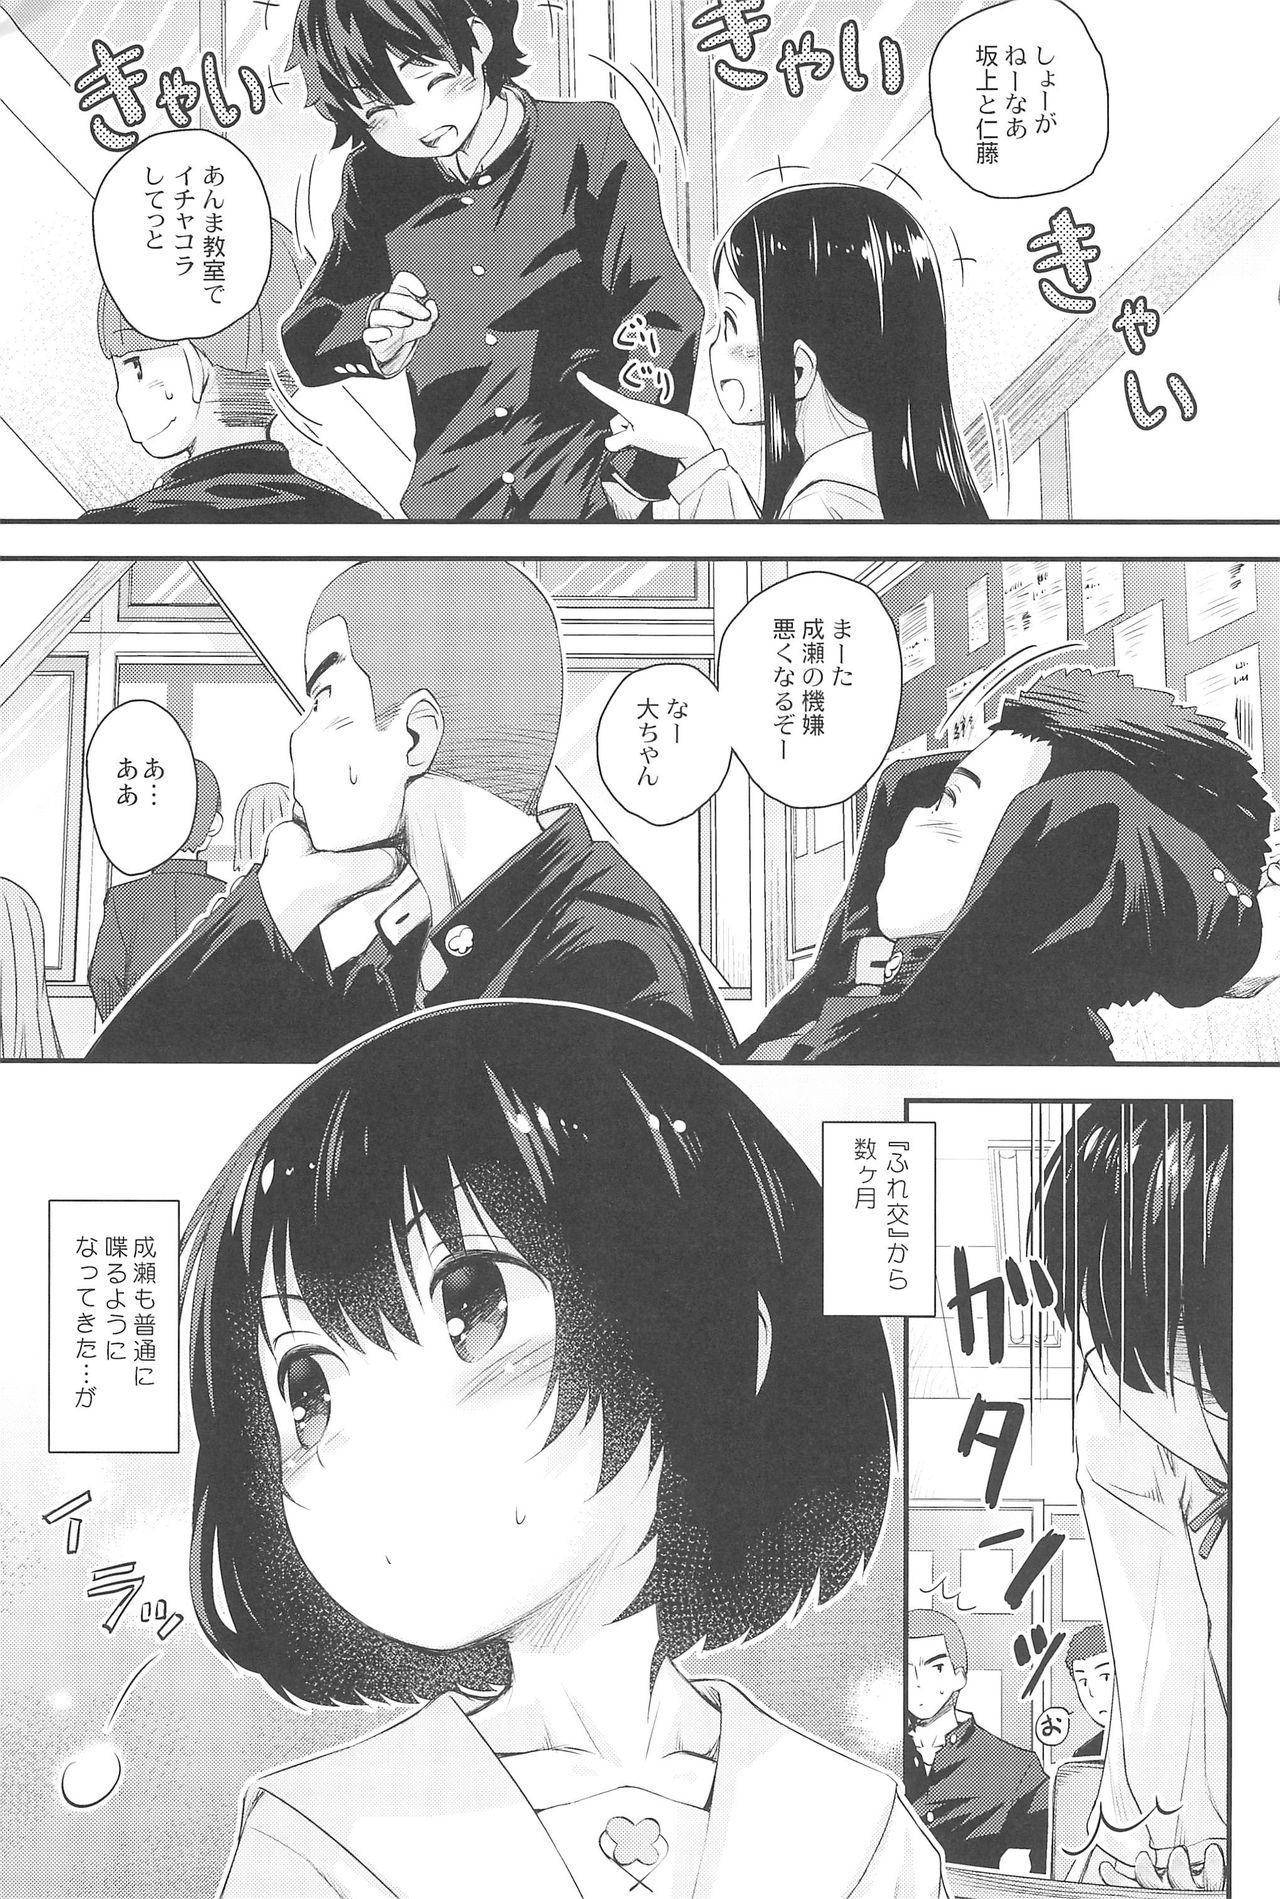 Long Hair Jun-chan to Oshiro de Sakebikko shitainda. - Kokoro ga sakebitagatterunda. Carro - Page 5